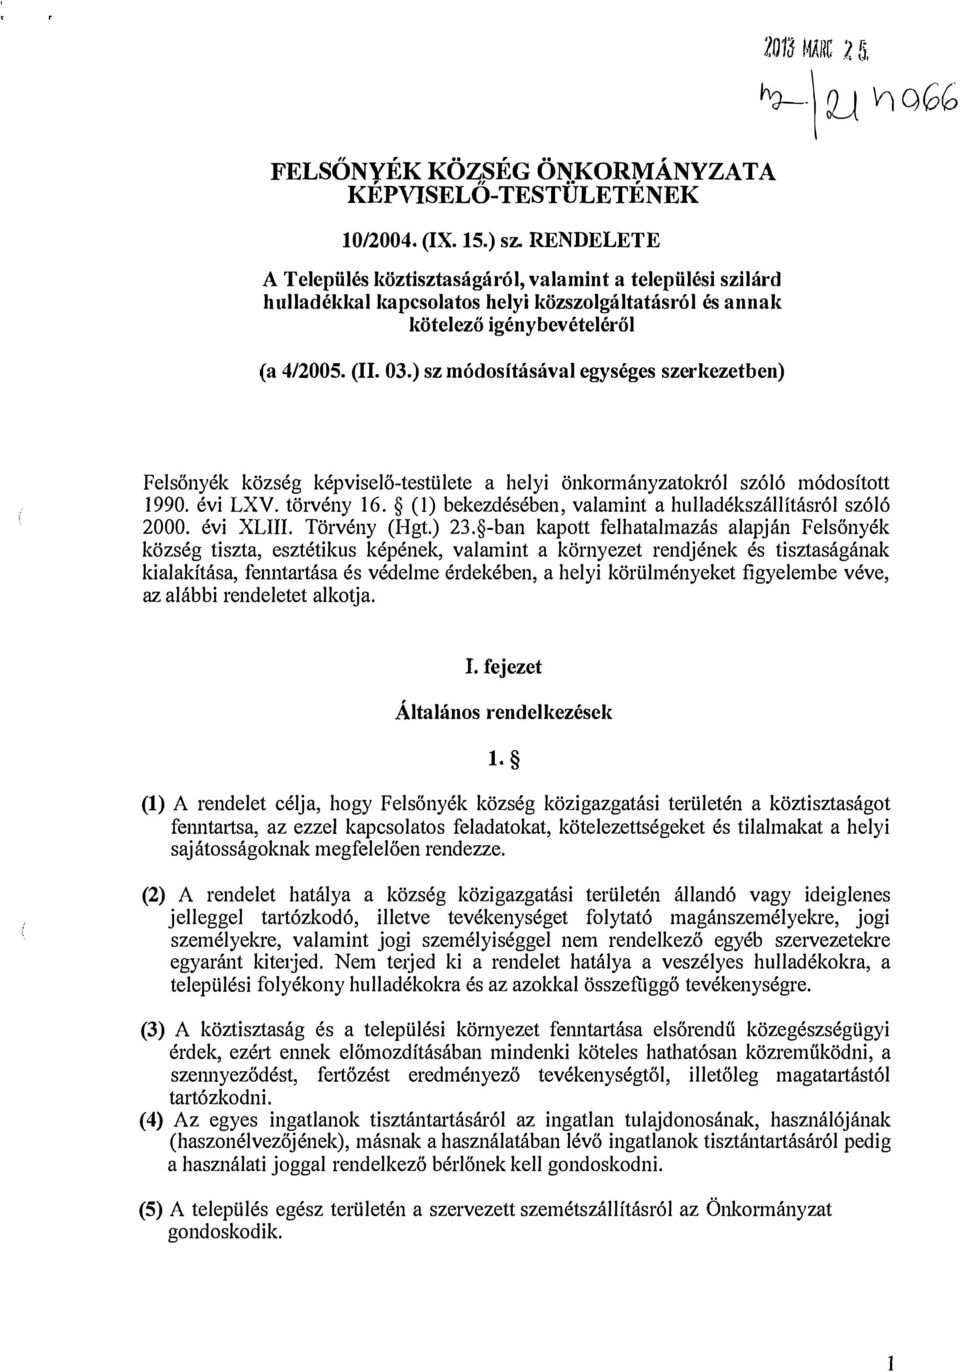 ) sz módositásával egységes szerkezetben) 2013 Mi\llC % 5. \ Q_J \ri ogg Felsőnyék község képviselő-testülete a helyi önkormányzatokról szóló módosított 1990. évi LXV. törvény 16. (!